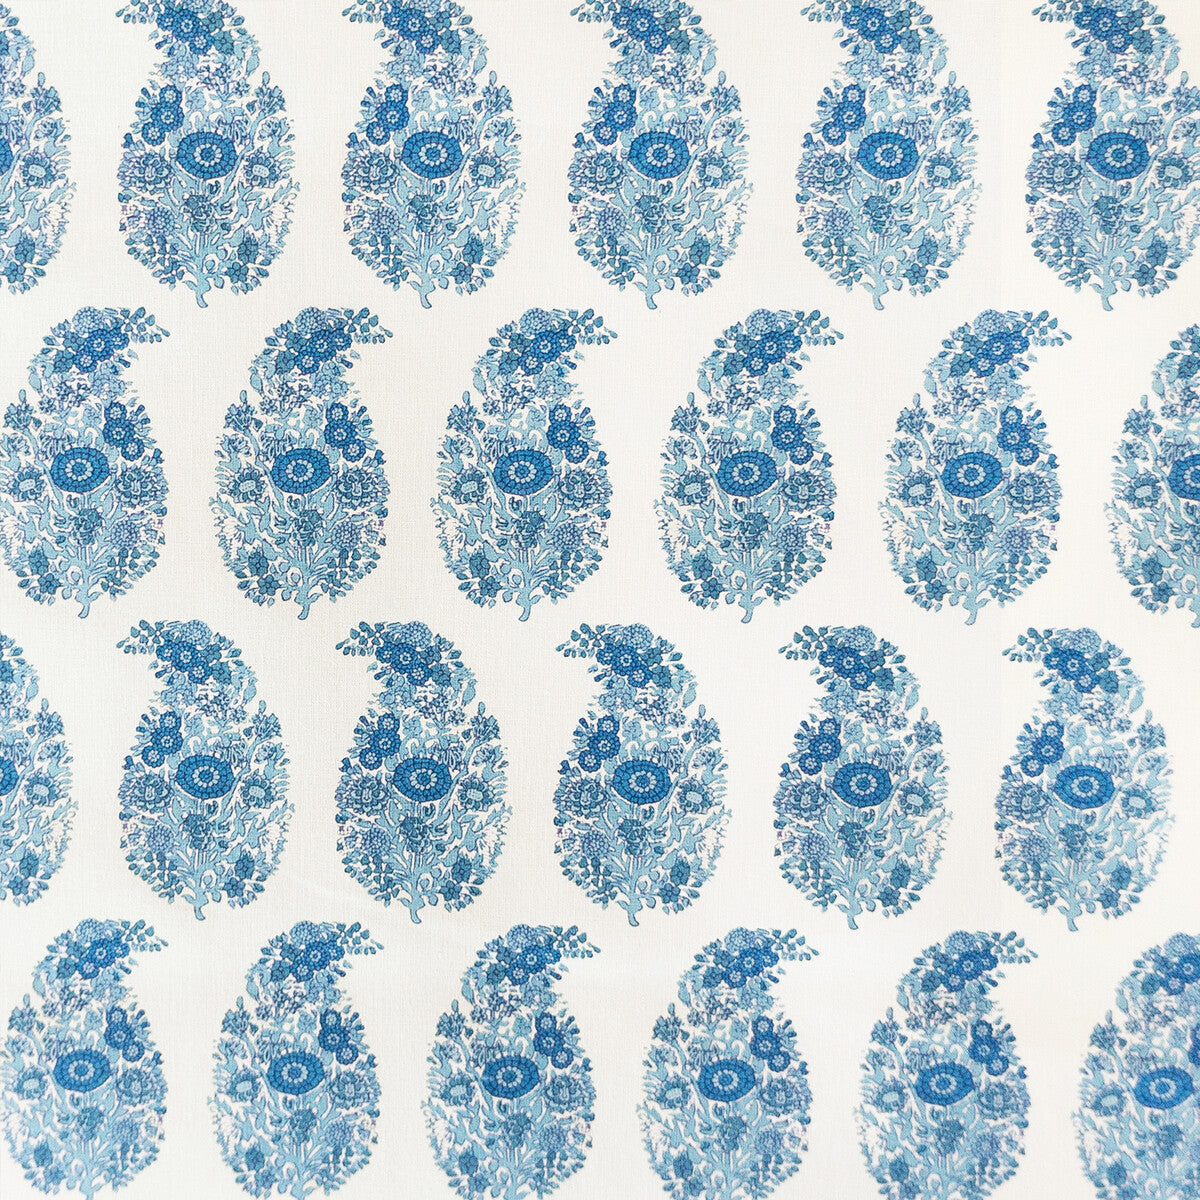 Tarsila fabric in azul color - pattern LCT1029.003.0 - by Gaston y Daniela in the Lorenzo Castillo V collection